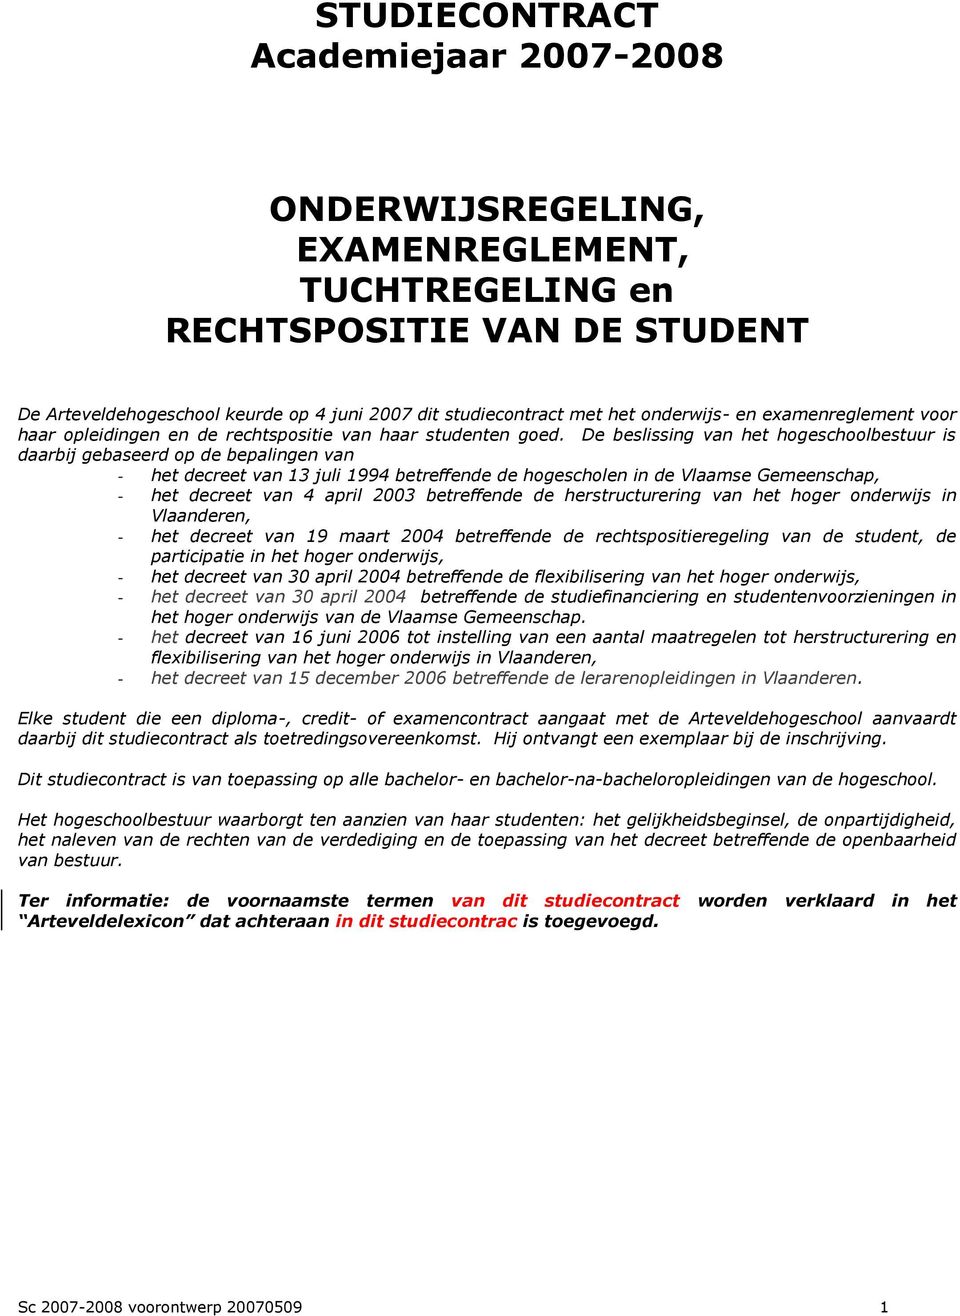 De beslissing van het hogeschoolbestuur is daarbij gebaseerd op de bepalingen van - het decreet van 13 juli 1994 betreffende de hogescholen in de Vlaamse Gemeenschap, - het decreet van 4 april 2003